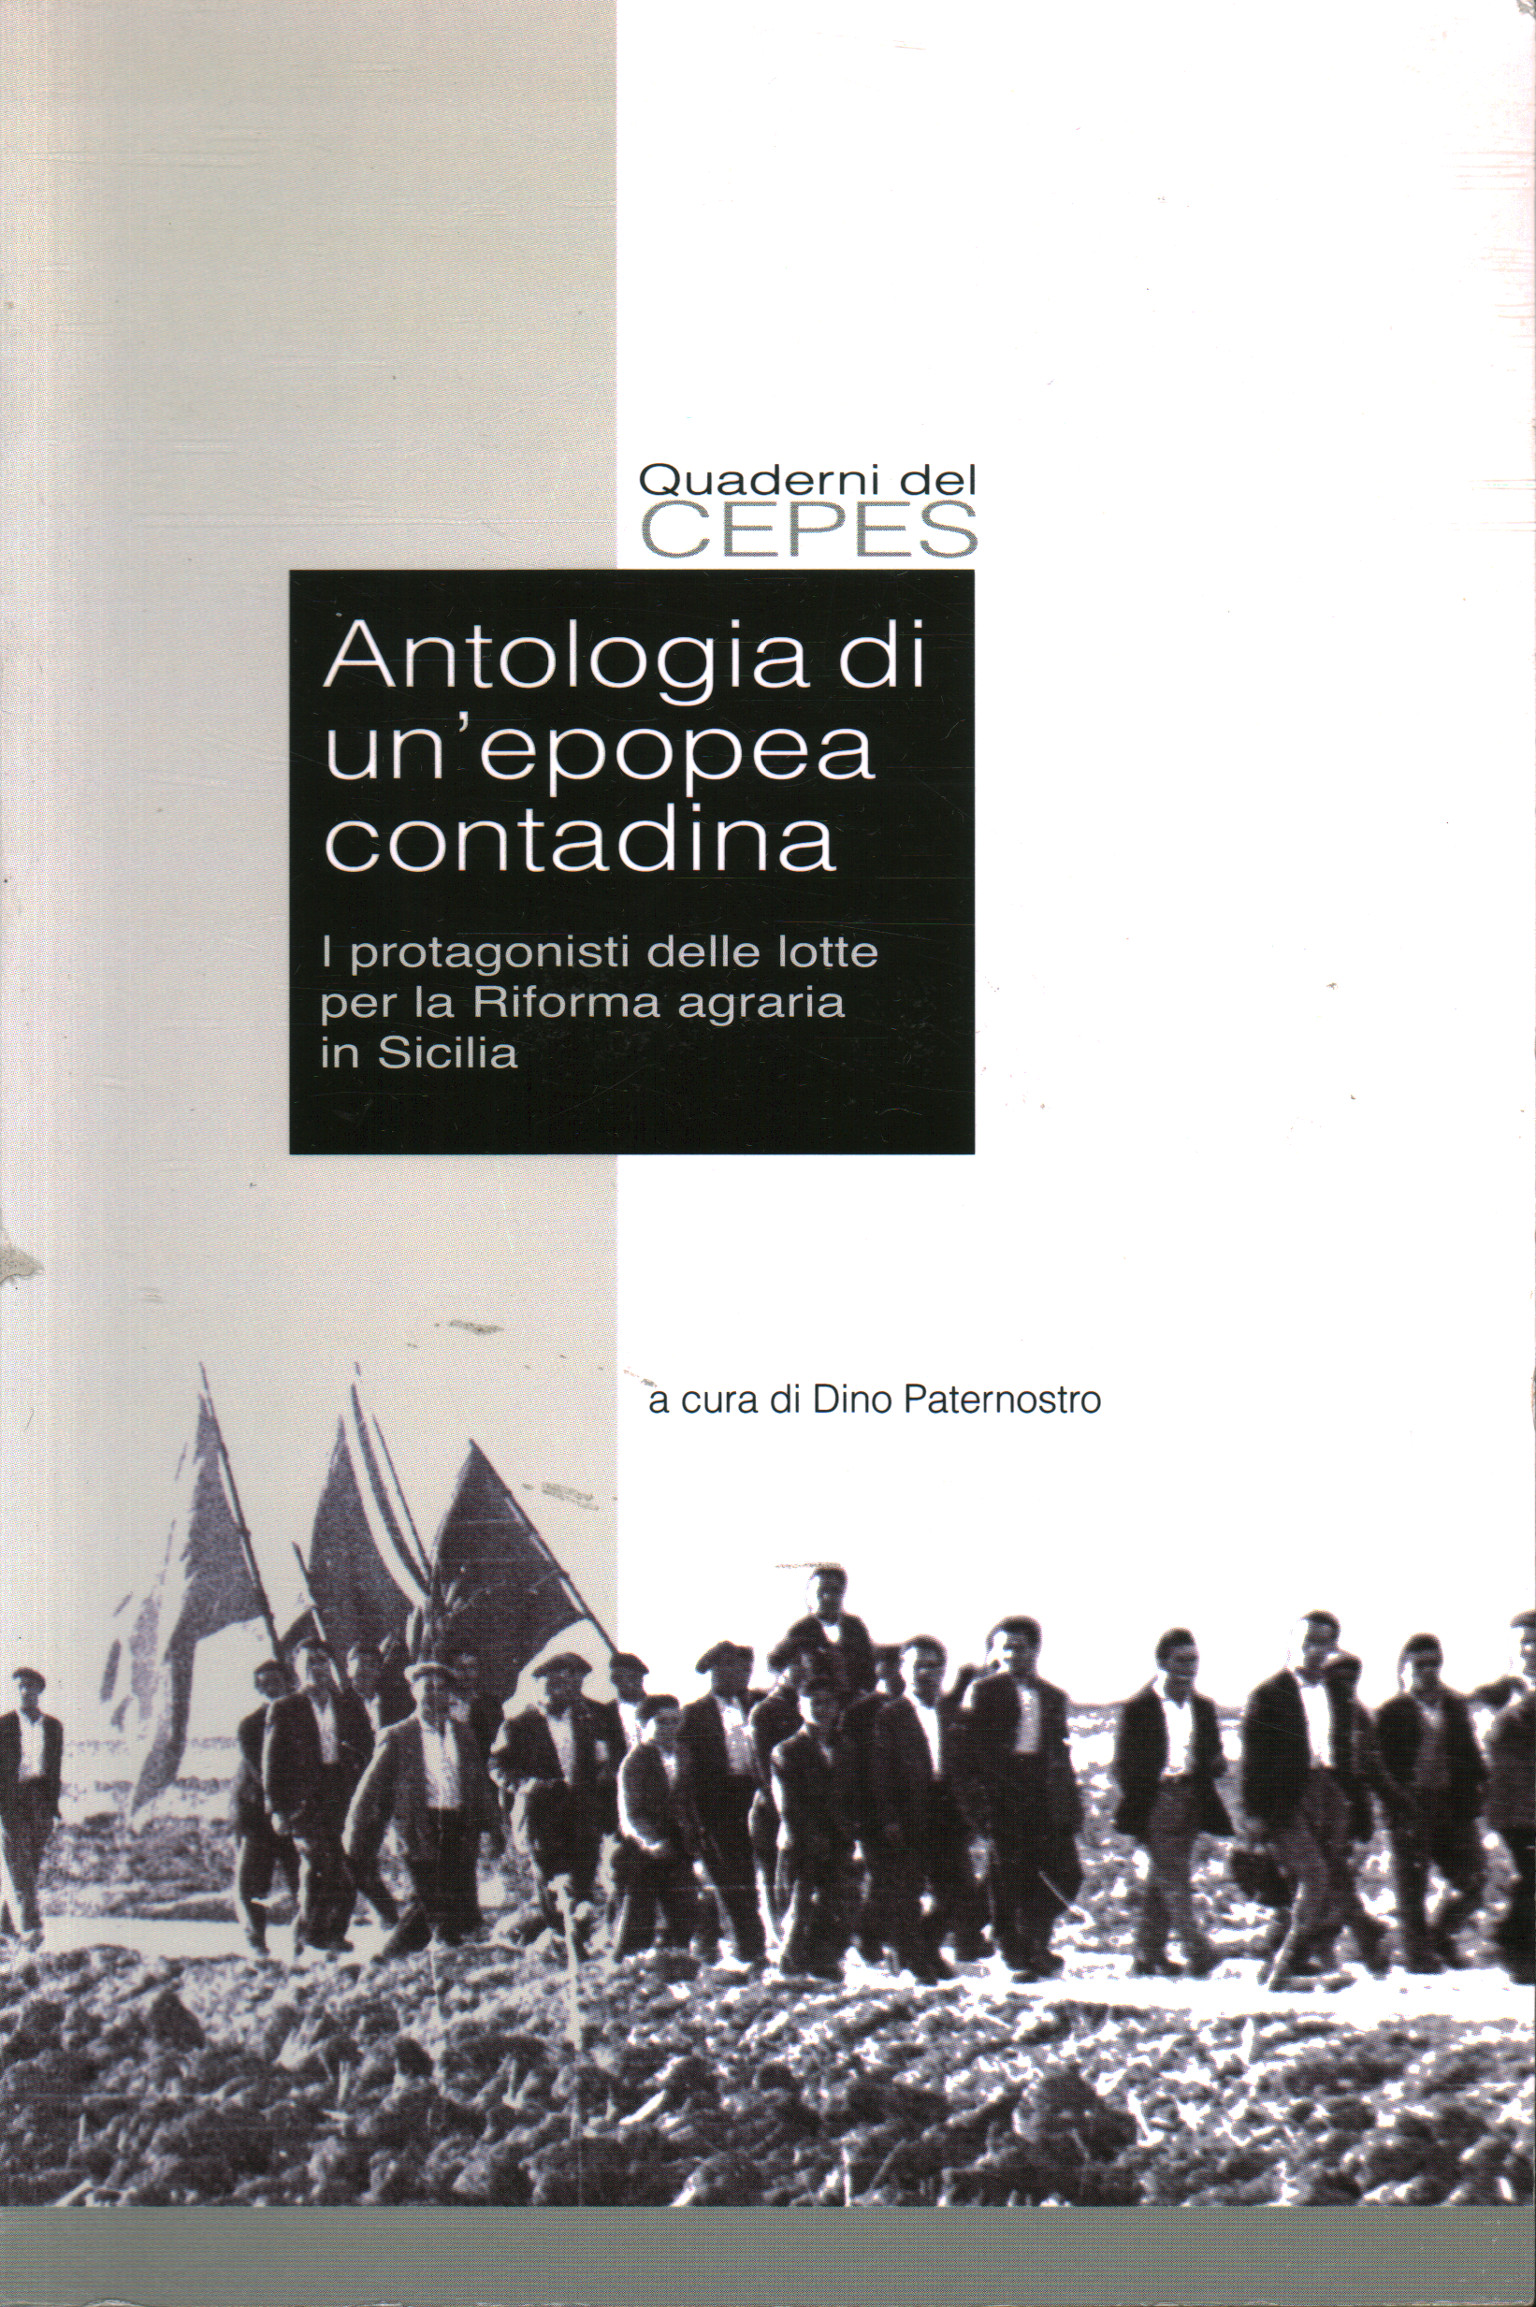 Antologia di un epopea contadina, Dino Paternostro